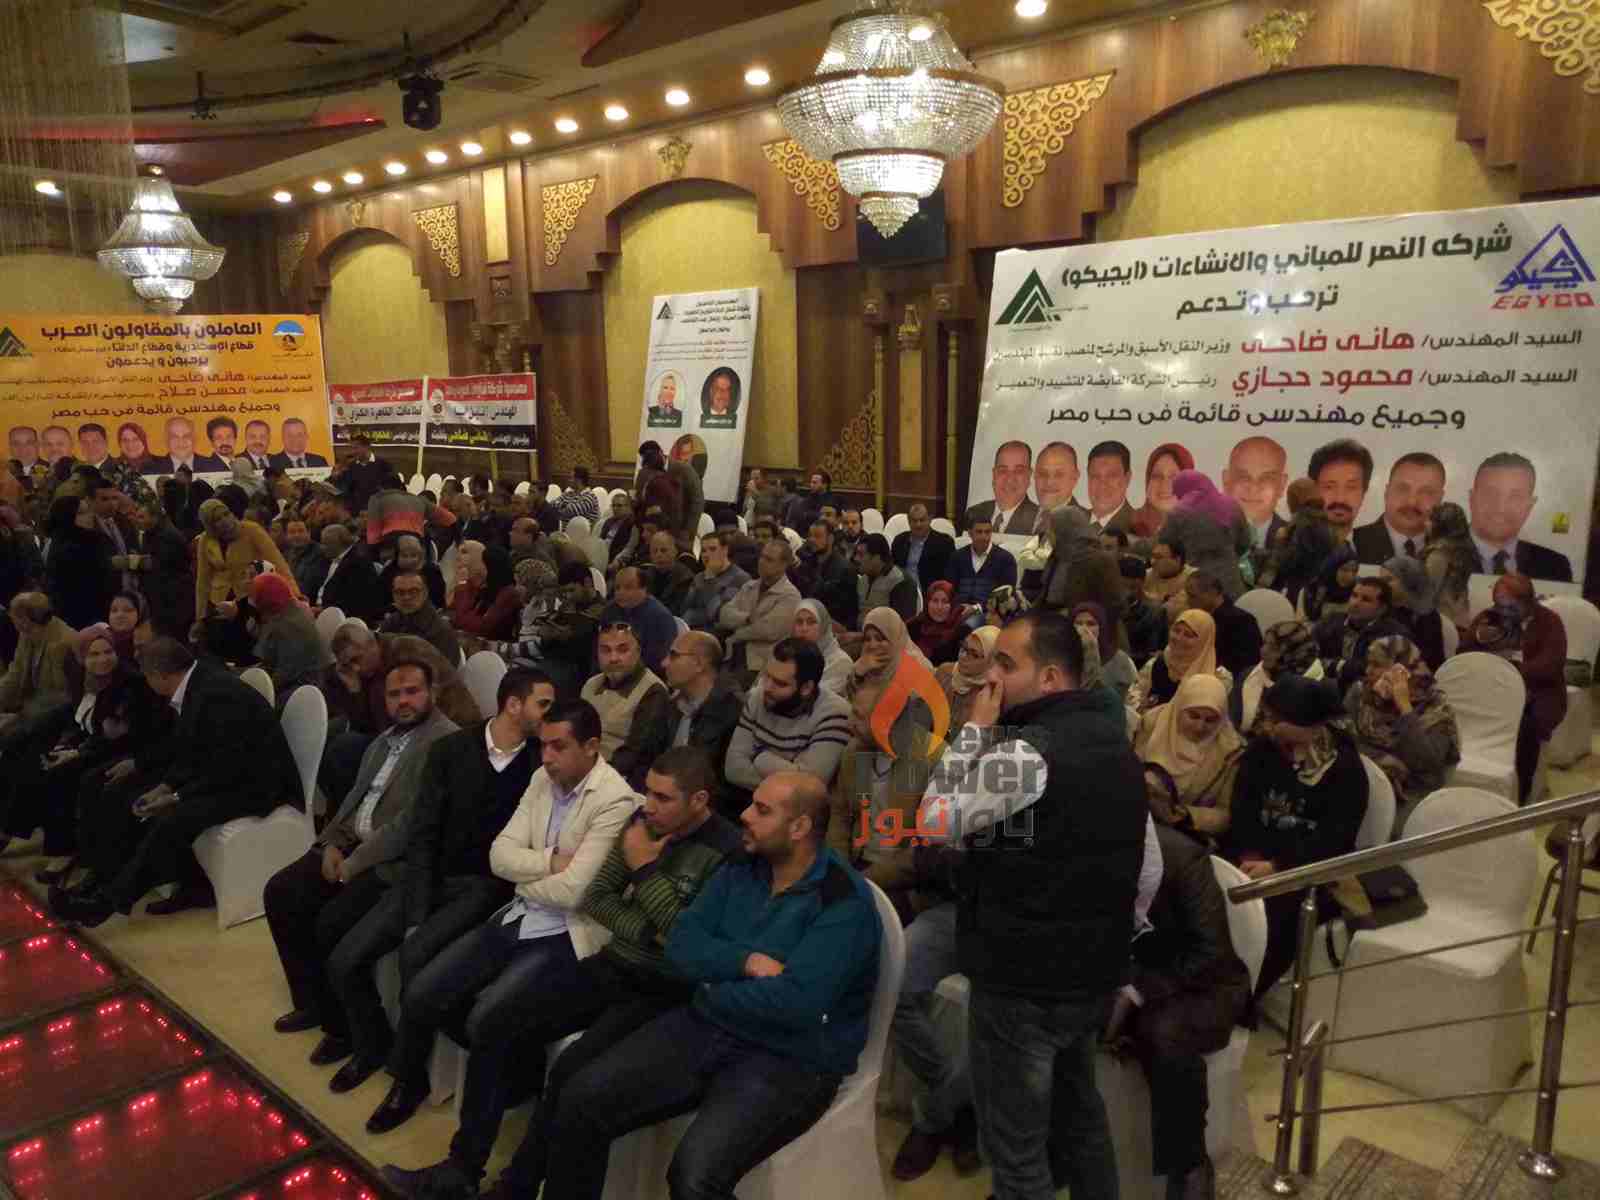 بالصور ... توافد المئات من مهندسي الدقهلية للمشاركة في مؤتمر قائمة في حب مصر لإنتخابات نقابة المهندسين